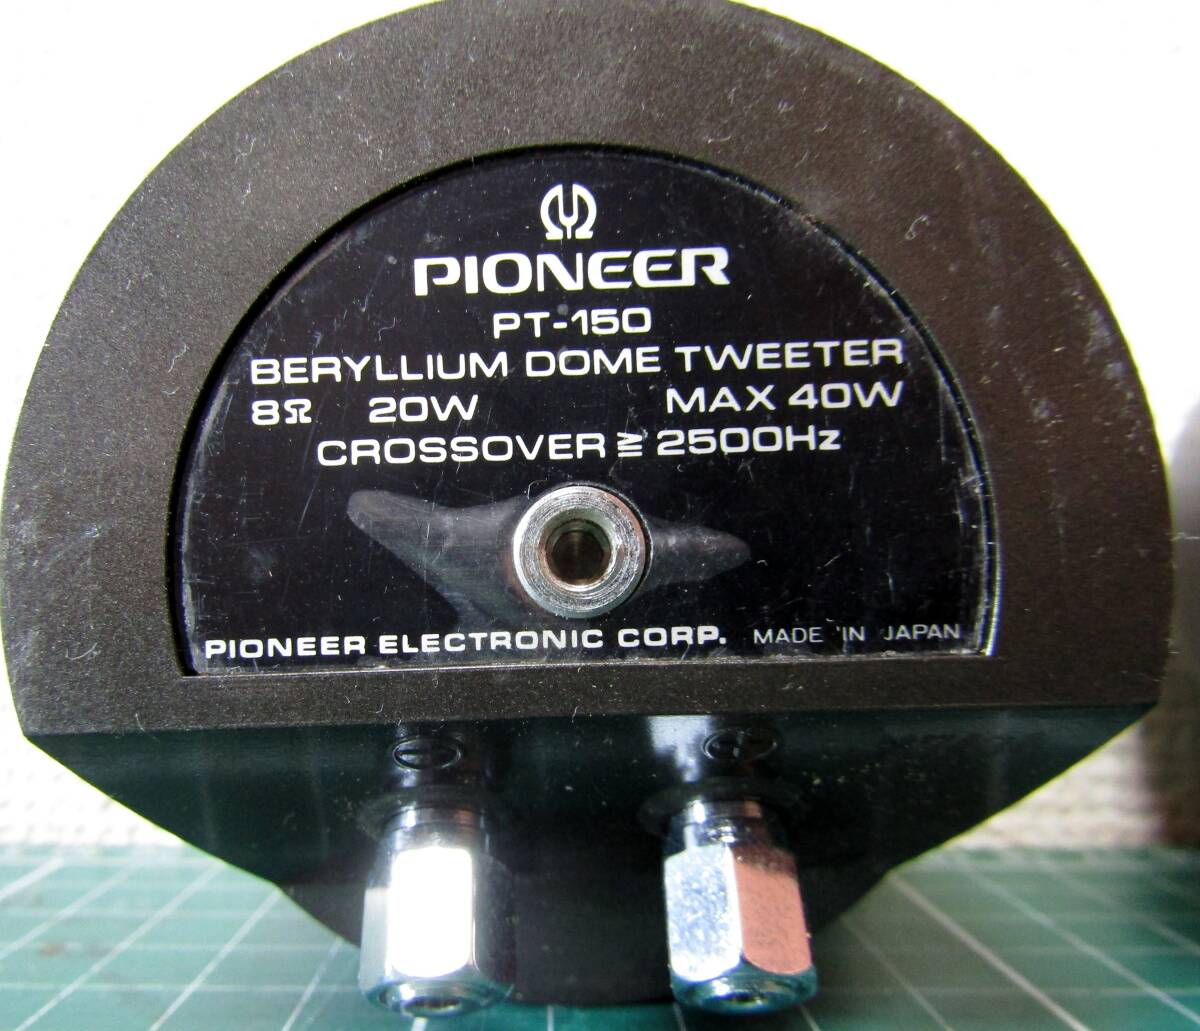 PIONEER Pioneer PT-150beliliumtui-ta- operation goods Tweeter tweeter tweeter 